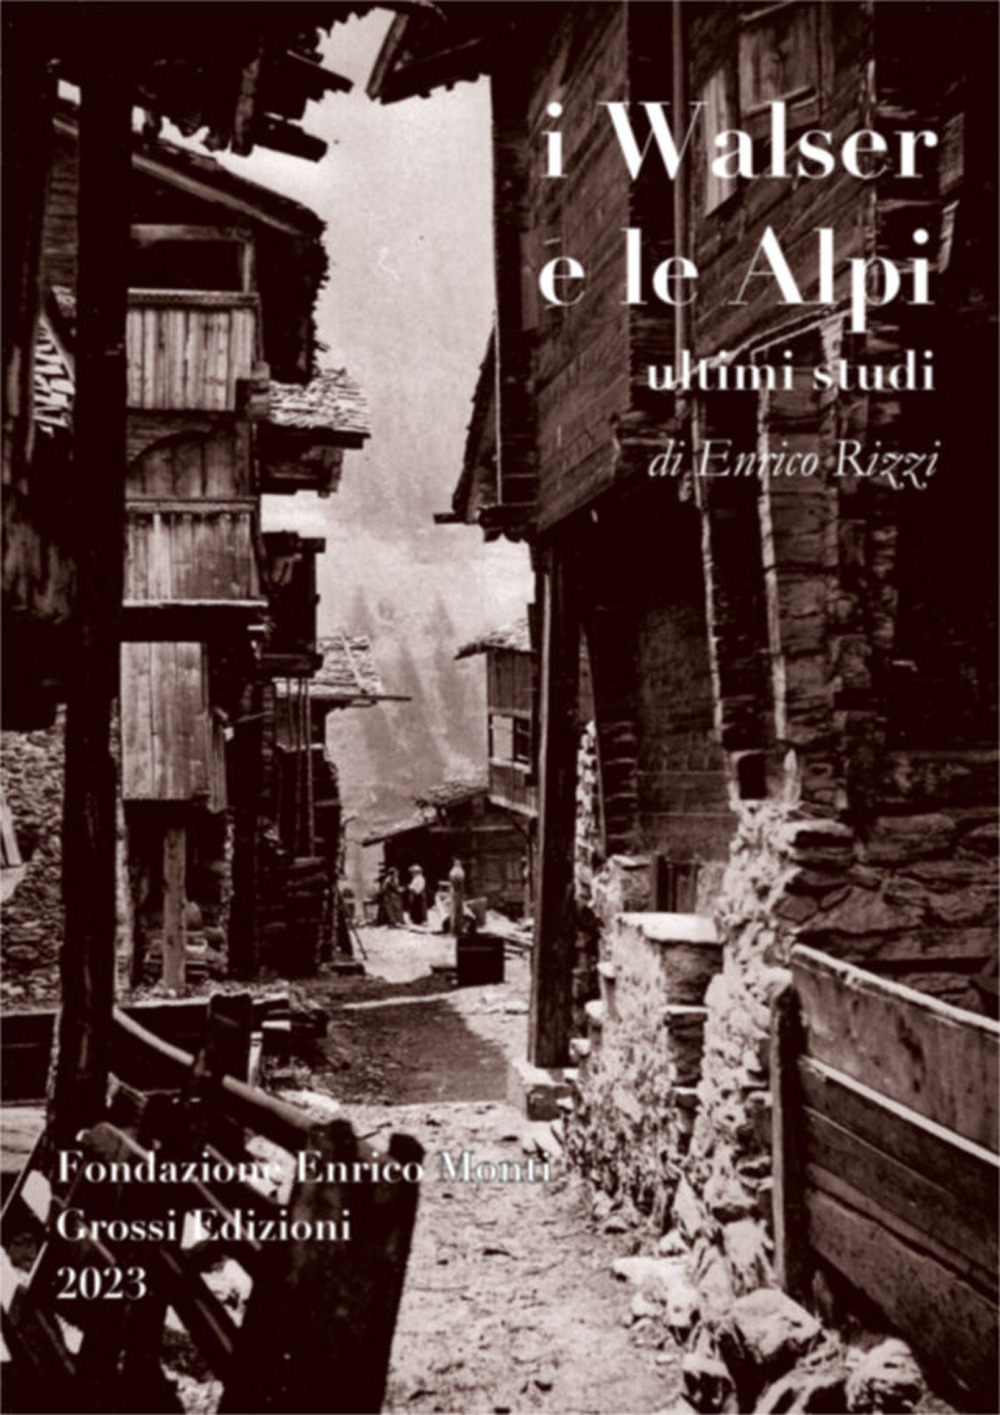 Libri Enrico Rizzi - I Walser E Le Alpi. Ultimi Studi NUOVO SIGILLATO, EDIZIONE DEL 24/05/2023 SUBITO DISPONIBILE